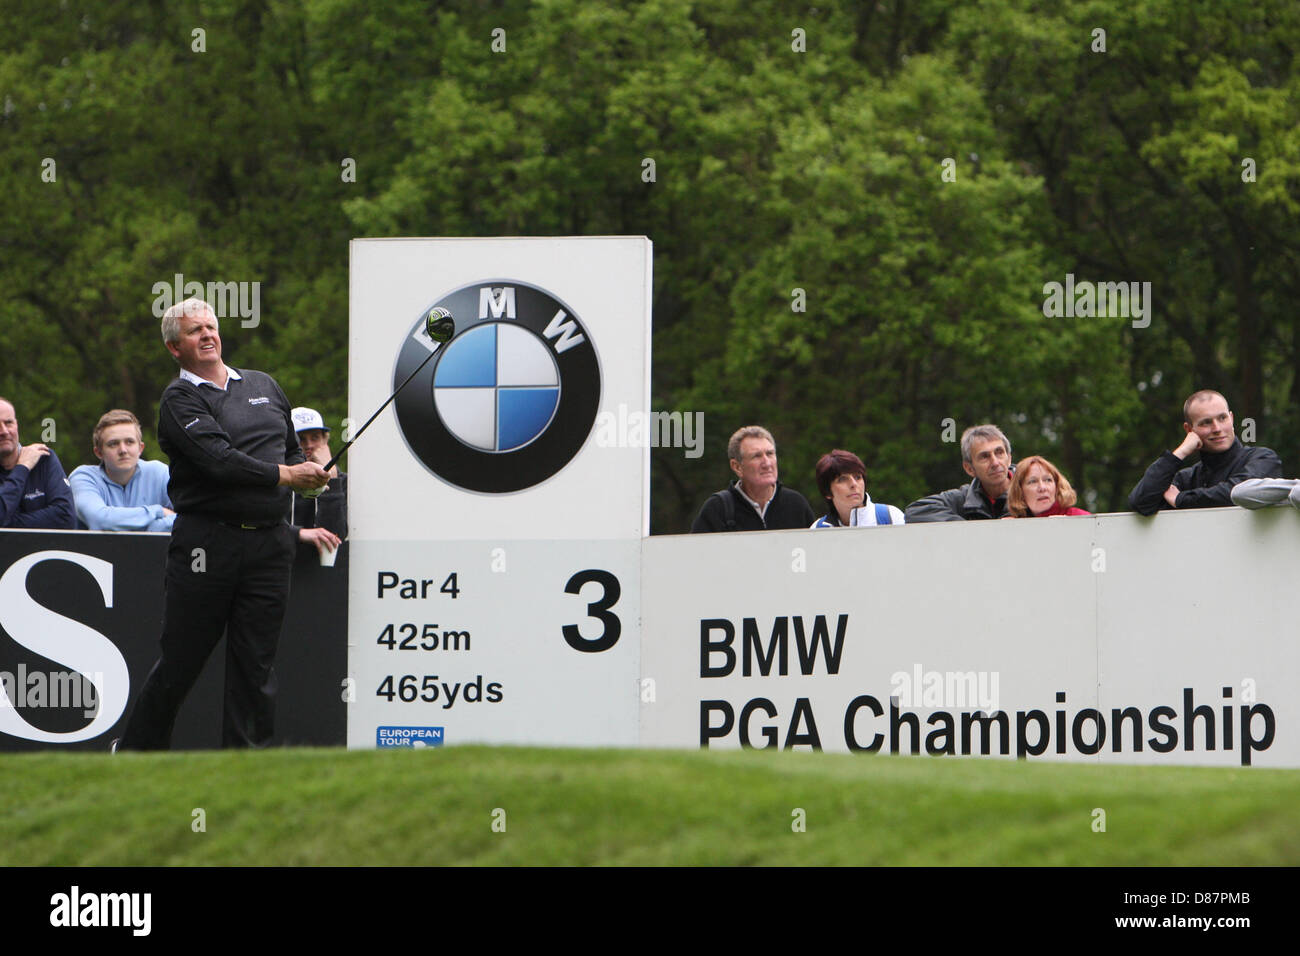 21.05.2013 Wentworth, Inghilterra. Colin Montgomerie durante la pratica davanti alla BMW PGA Championships. Foto Stock